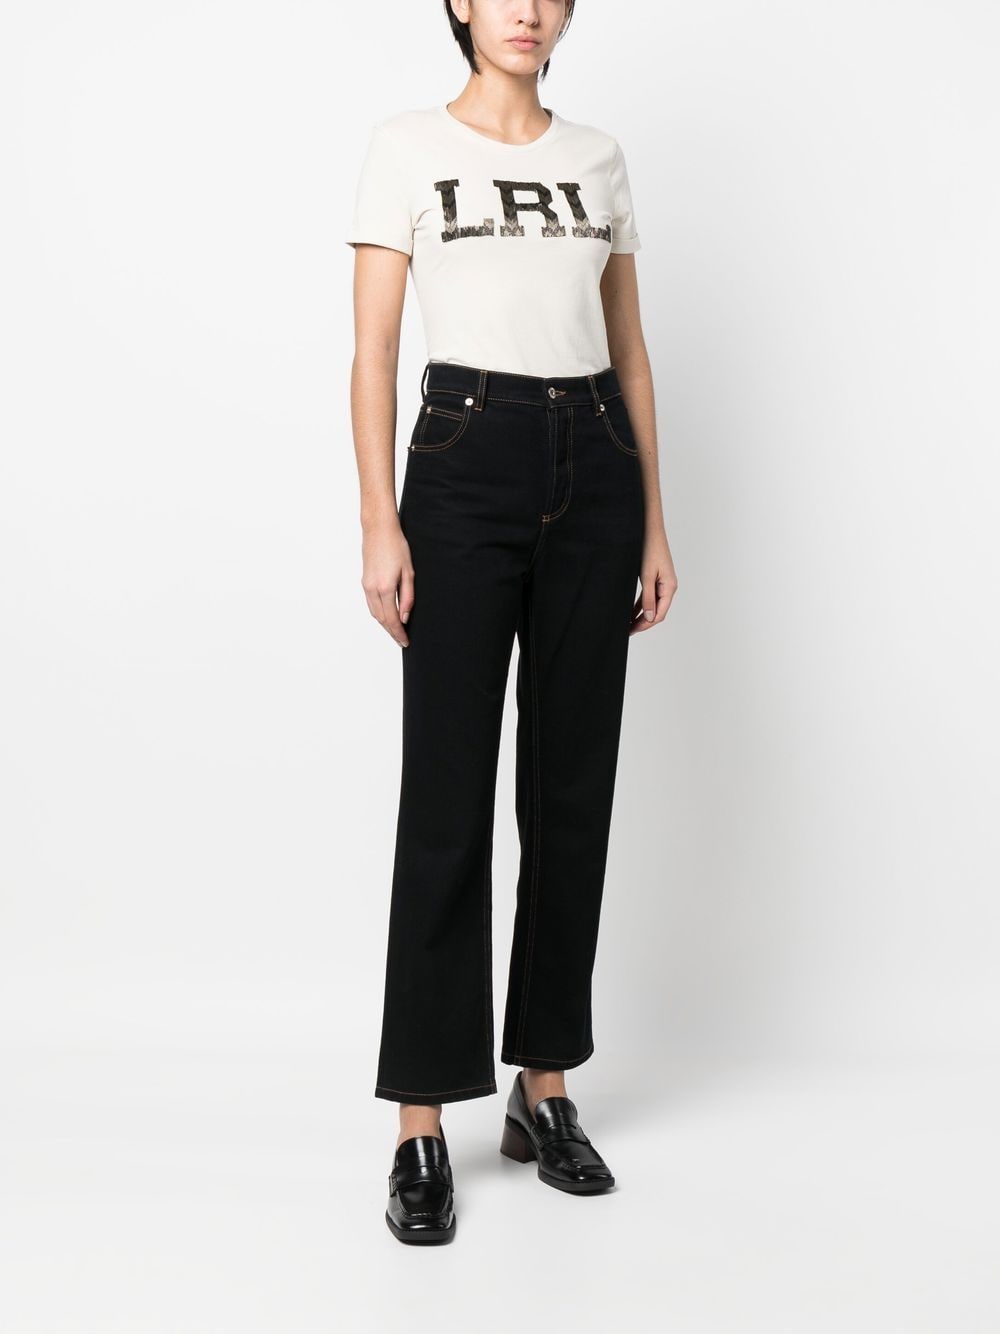 Lauren Ralph Lauren T-shirt - Beige